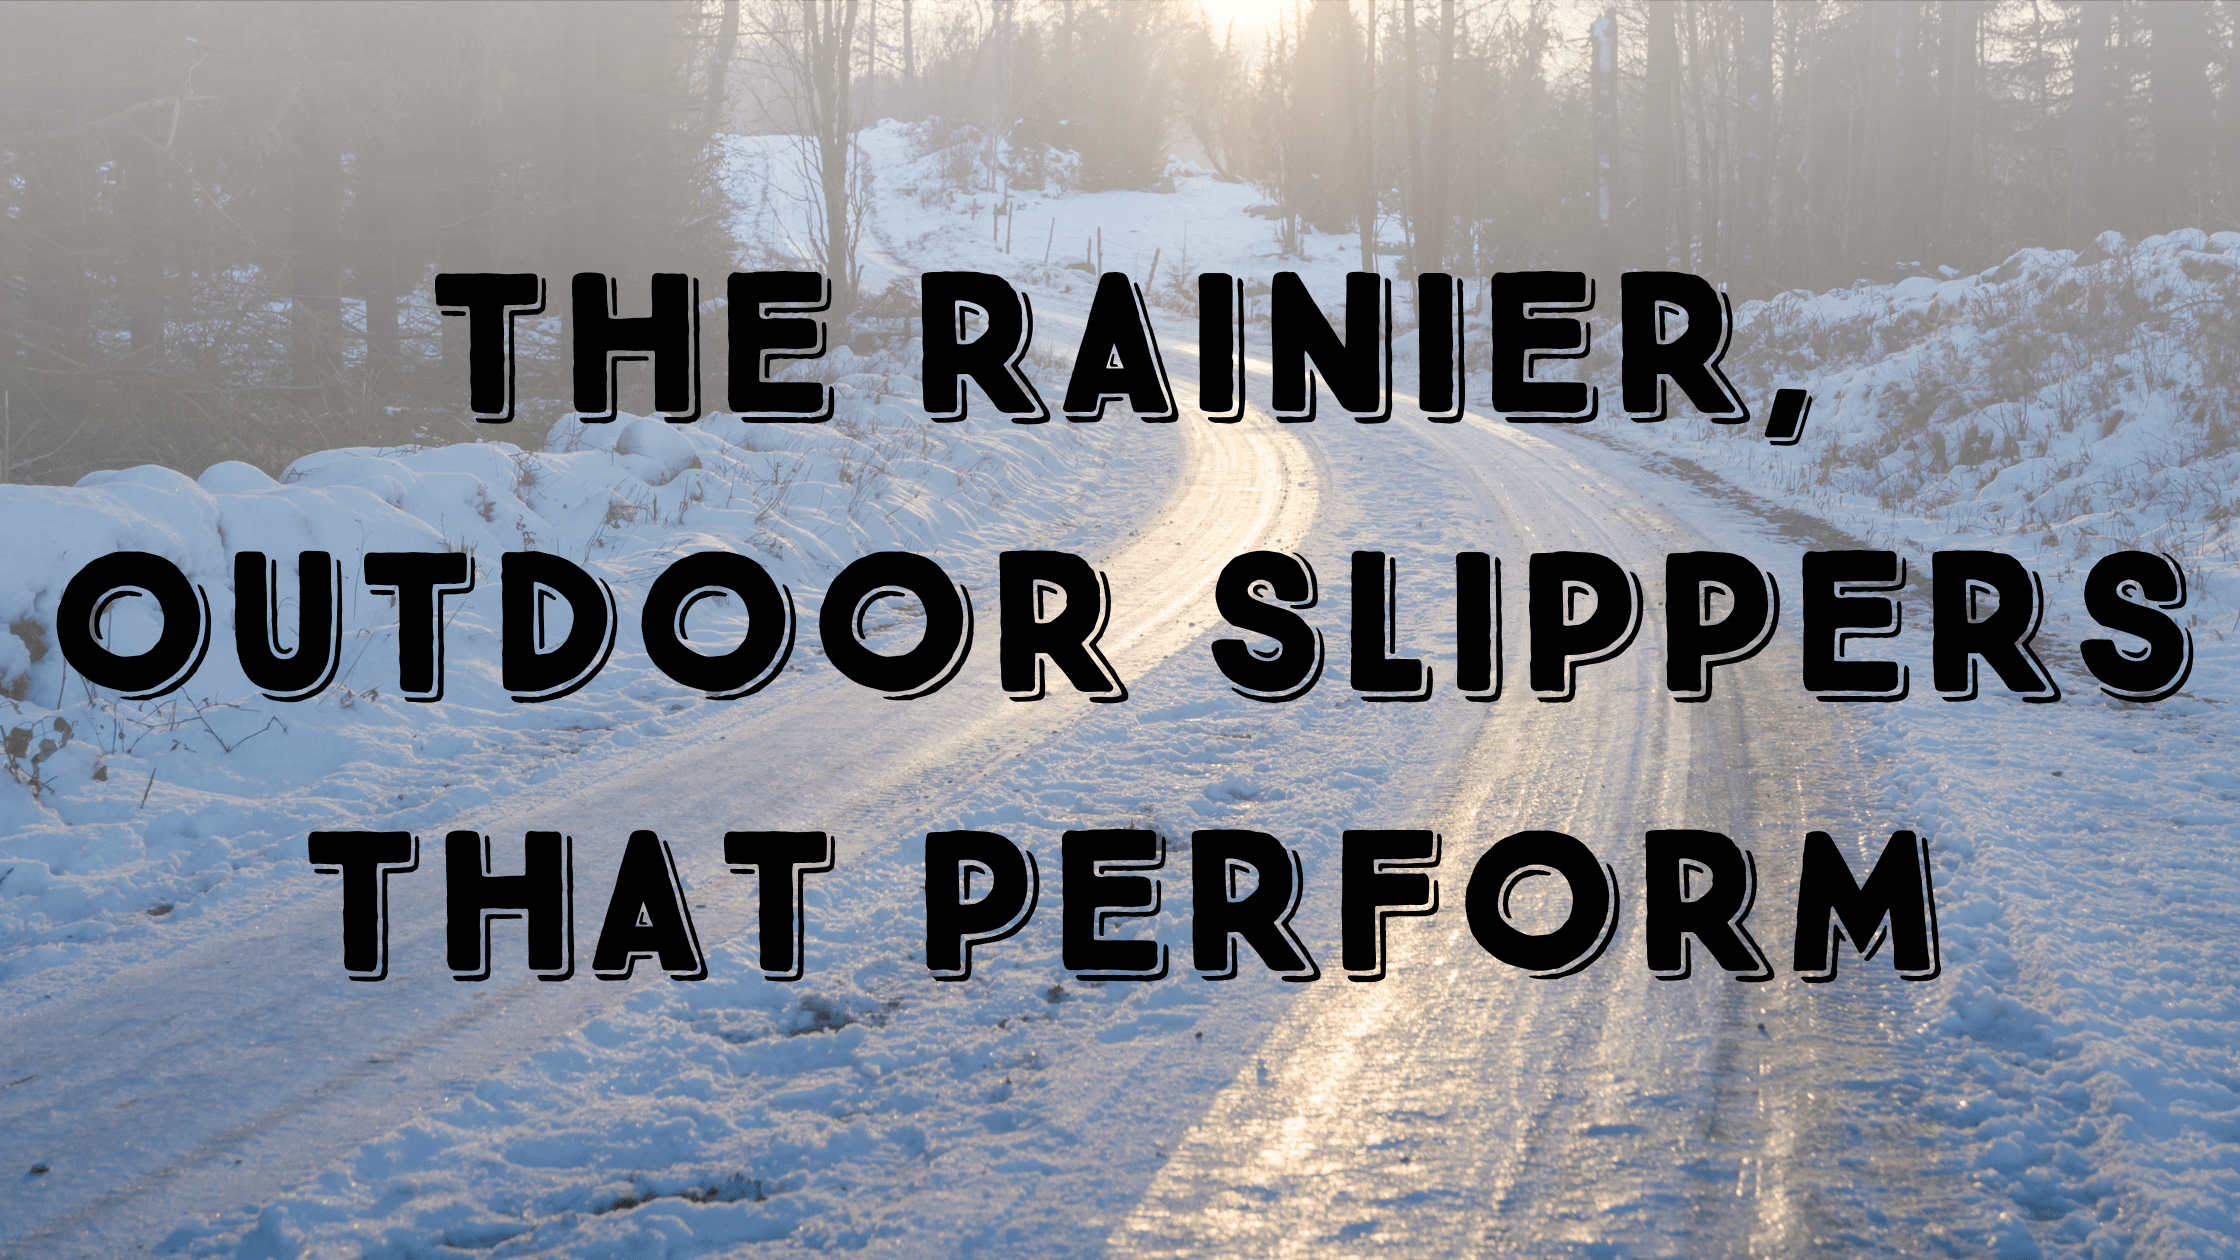 Indoor Outdoor Slippers - The Most Comfort for Winter